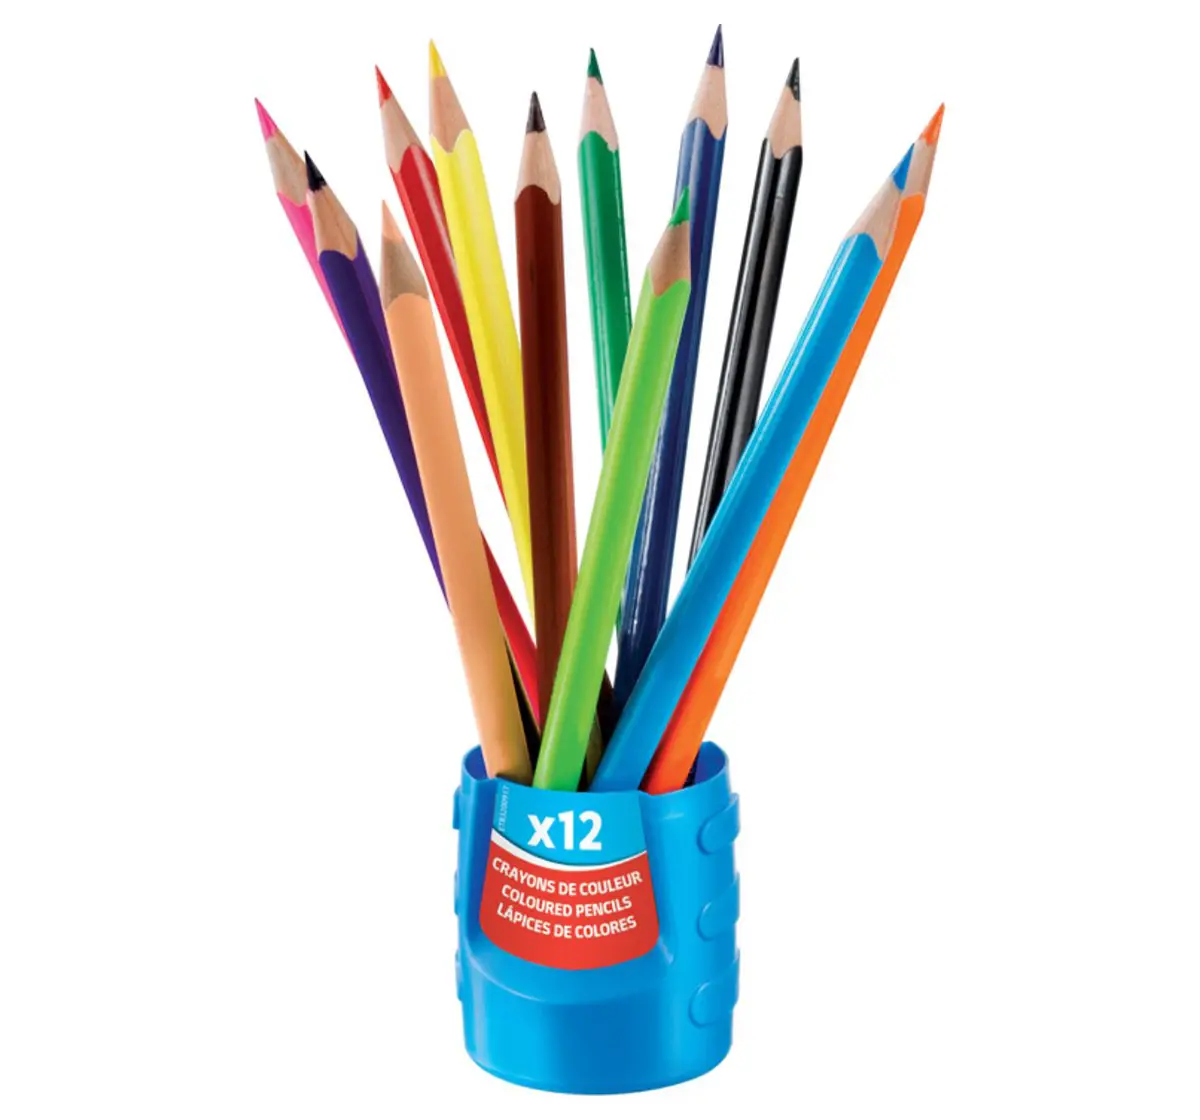 Maped 12 Colour Pencils Squeezy, 7Y+ (Multicolour)